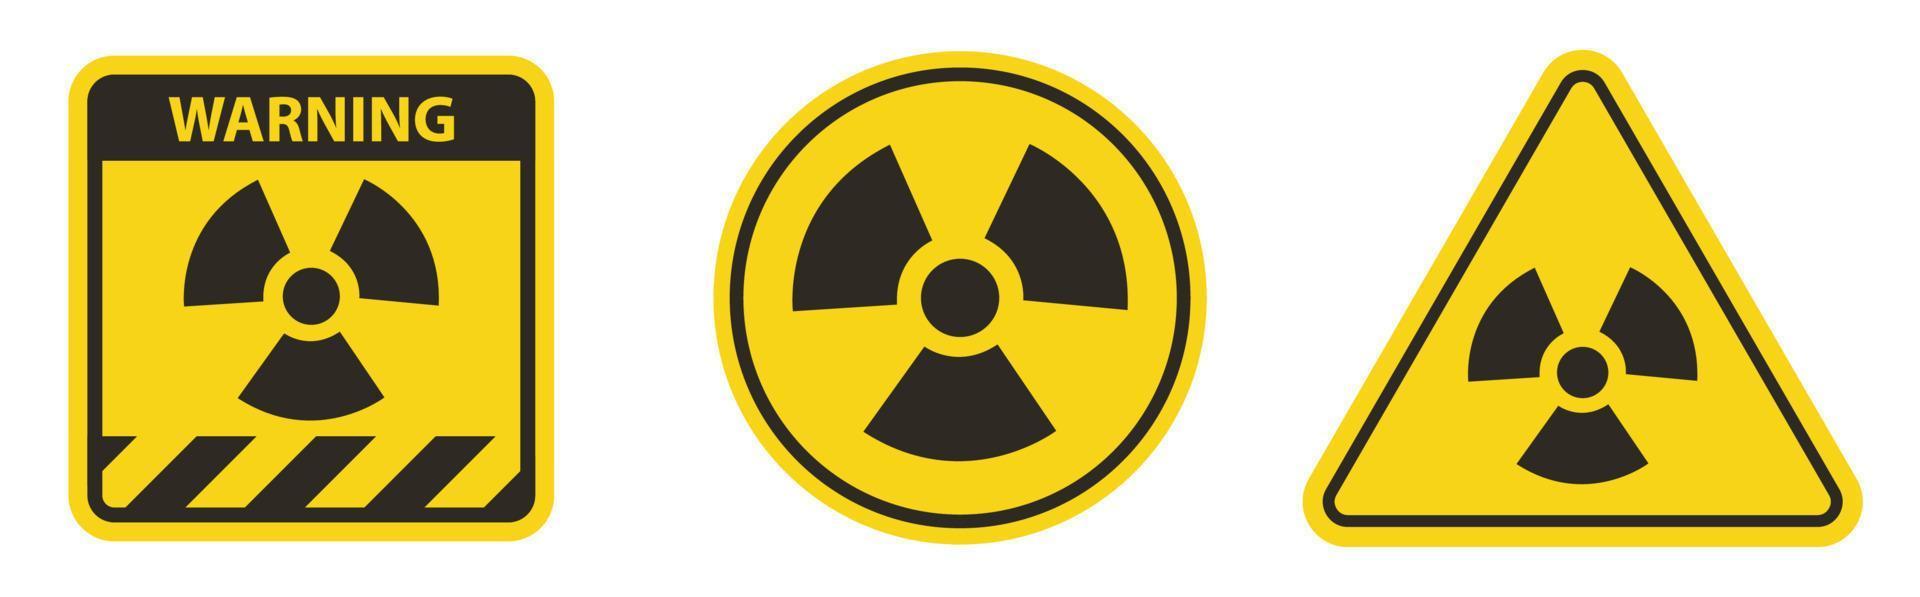 sinal de símbolo de perigo de radiação isolado em fundo branco, ilustração vetorial eps.10 vetor